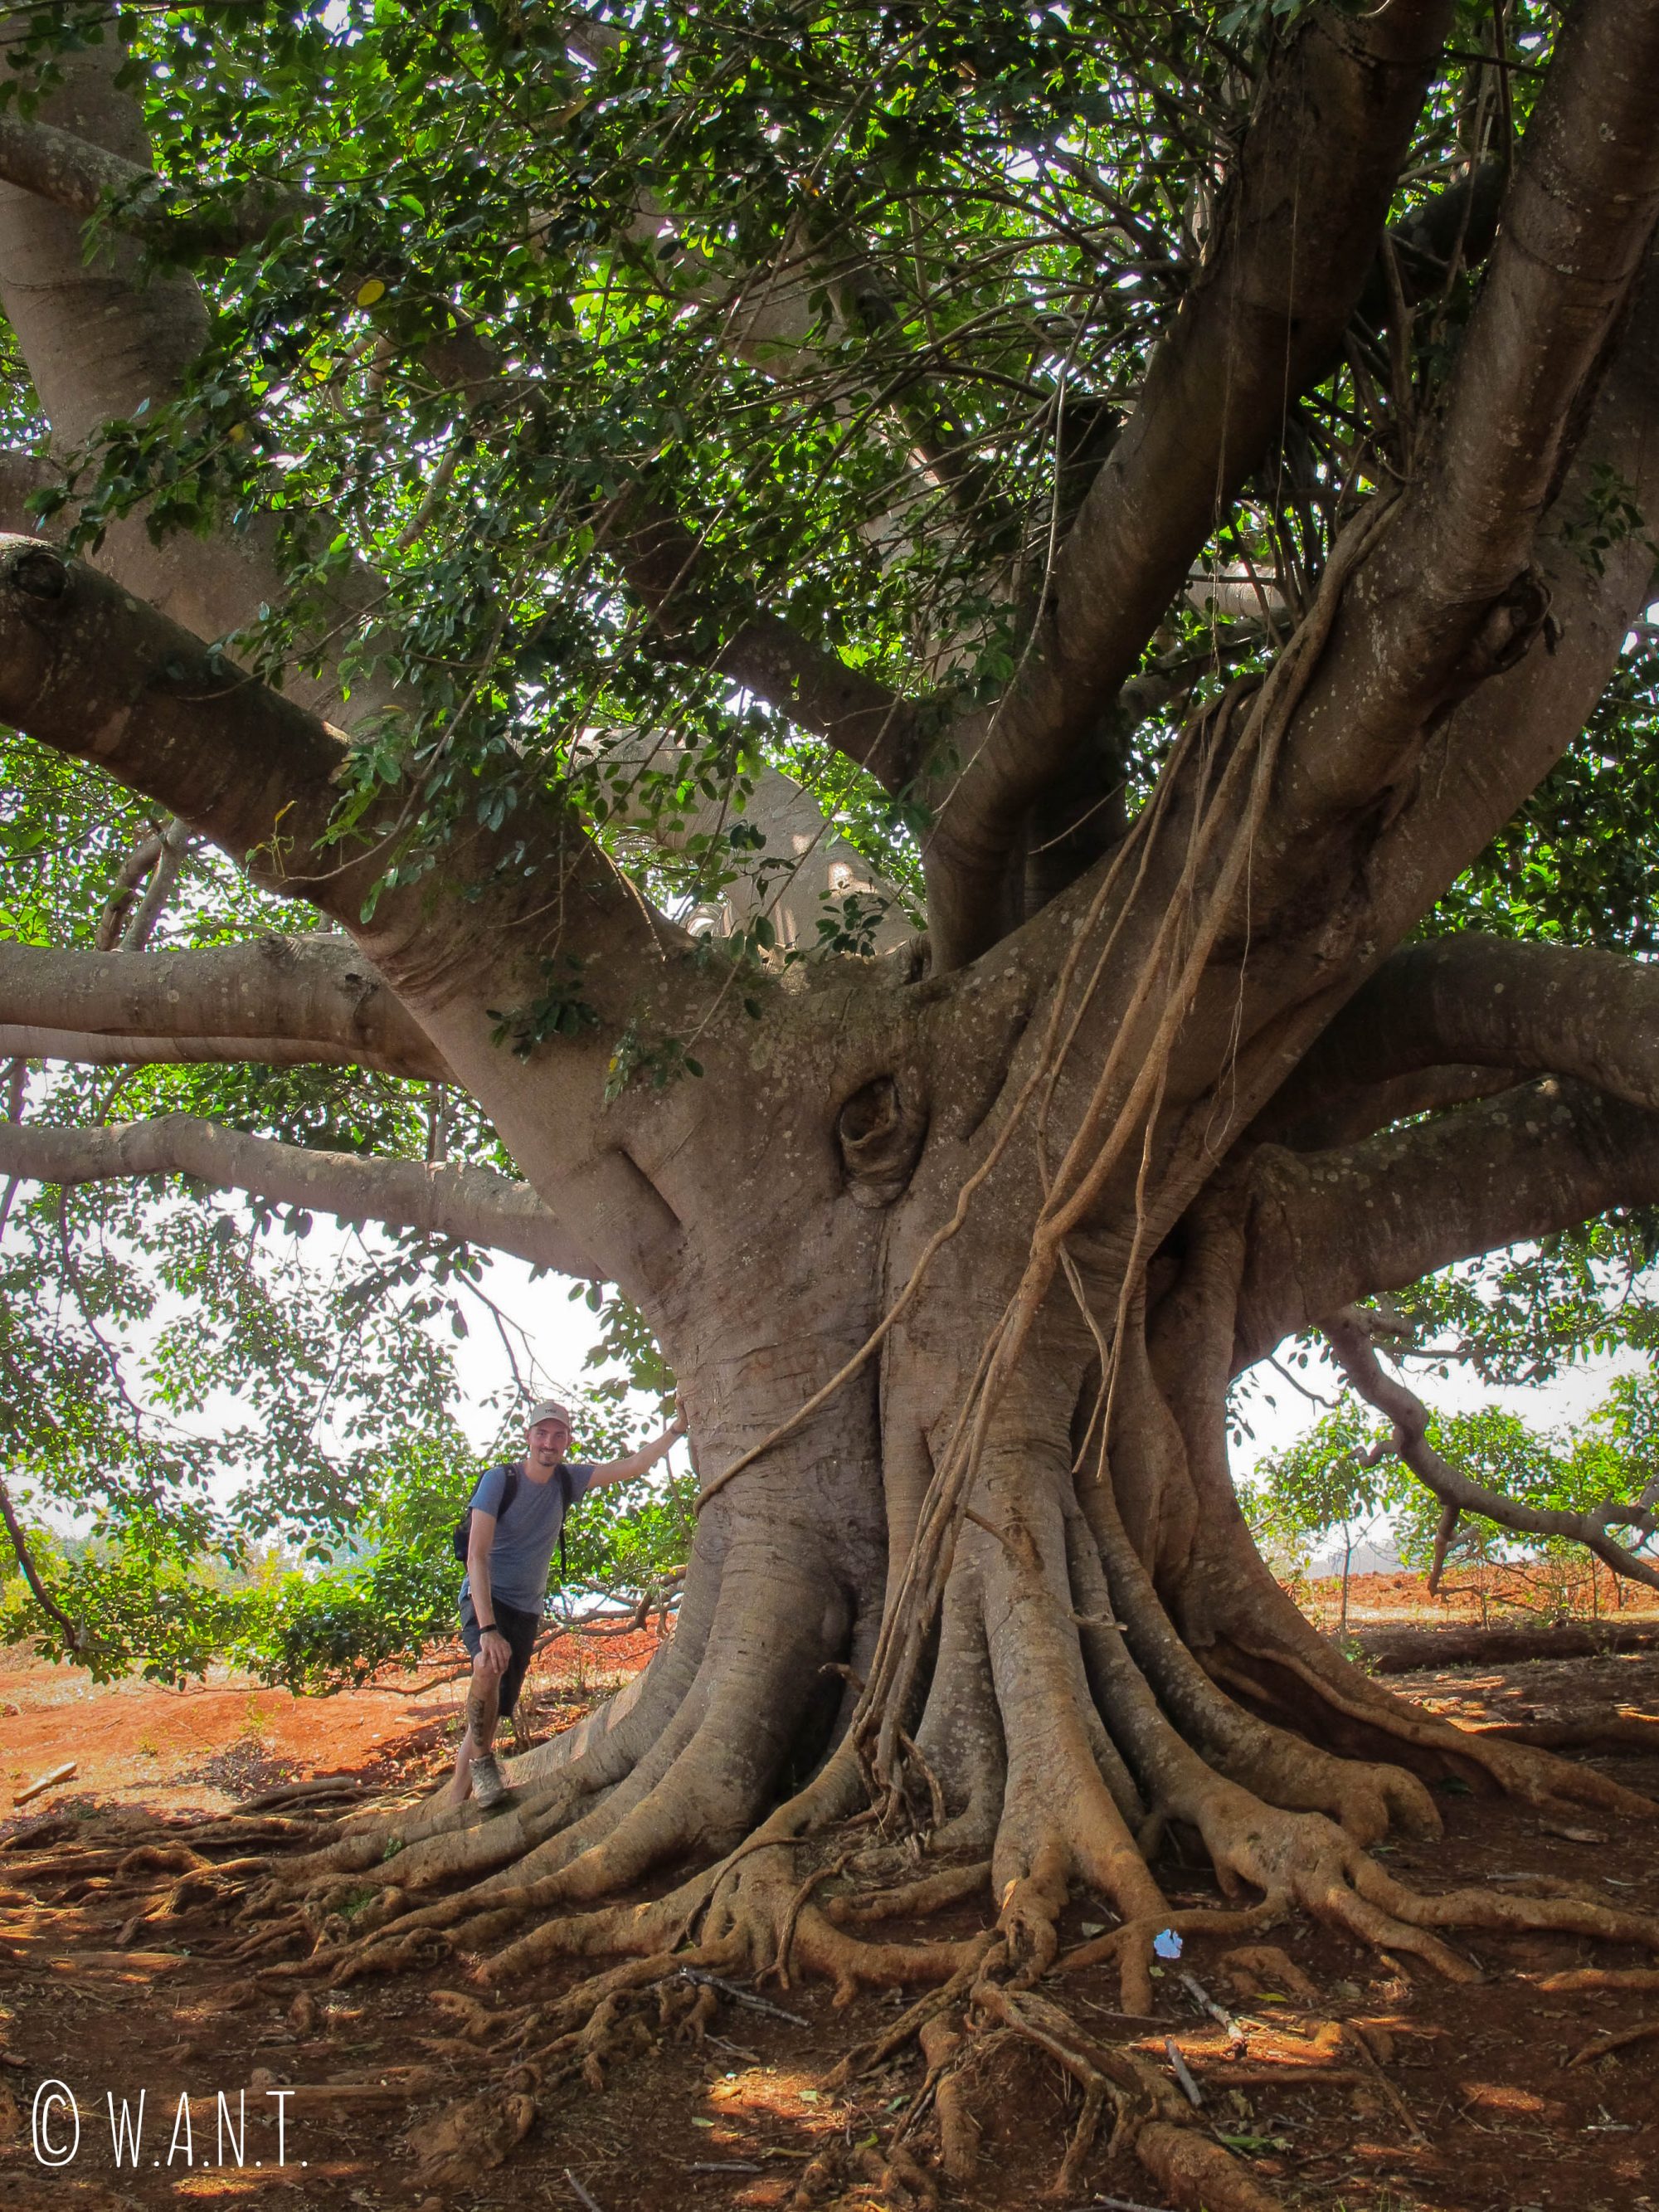 Banyan Tree, arbre sacré dans la culture bouddhique